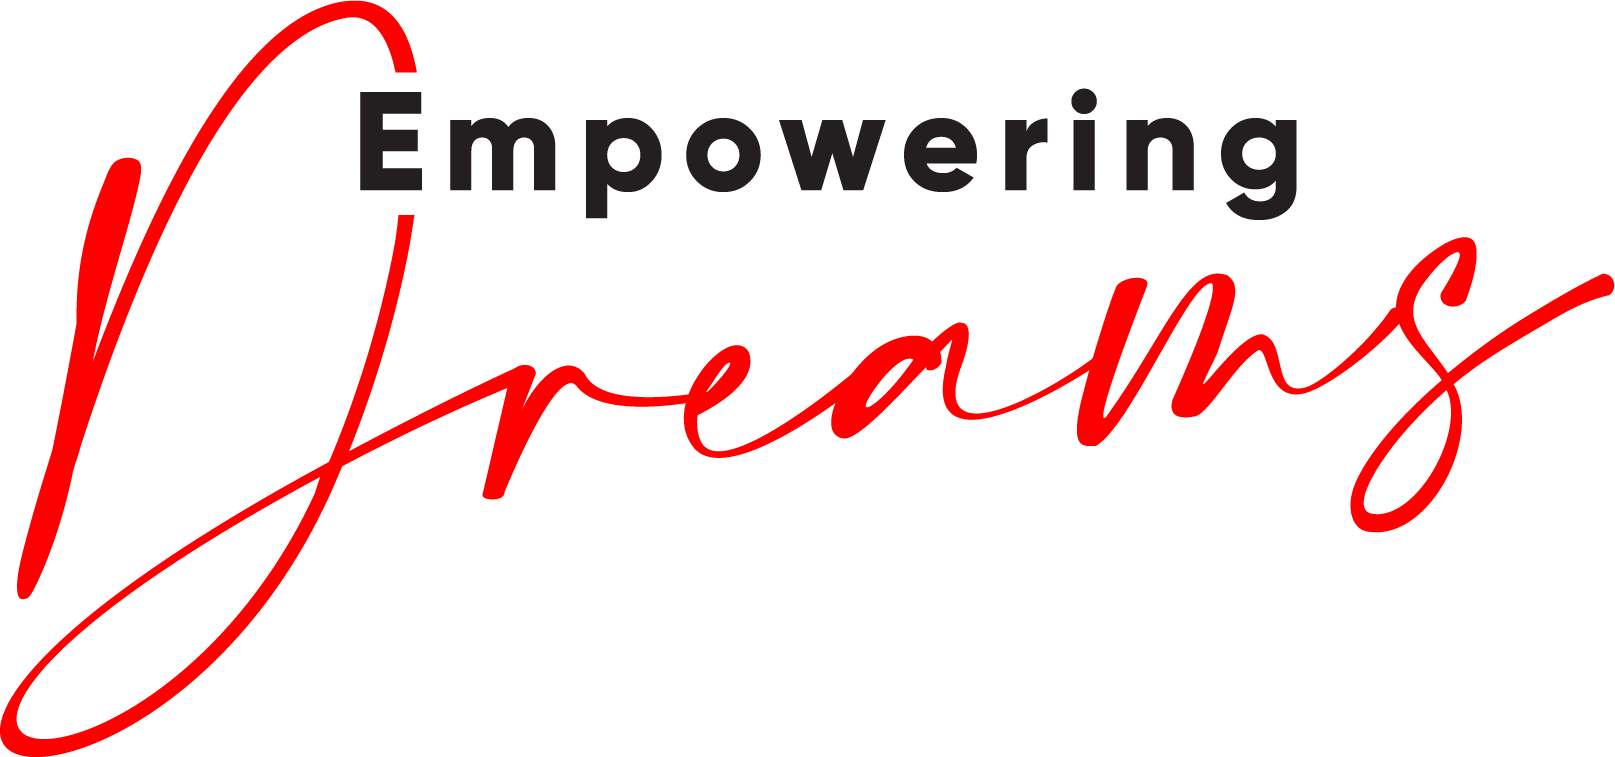 Empowering Dreams